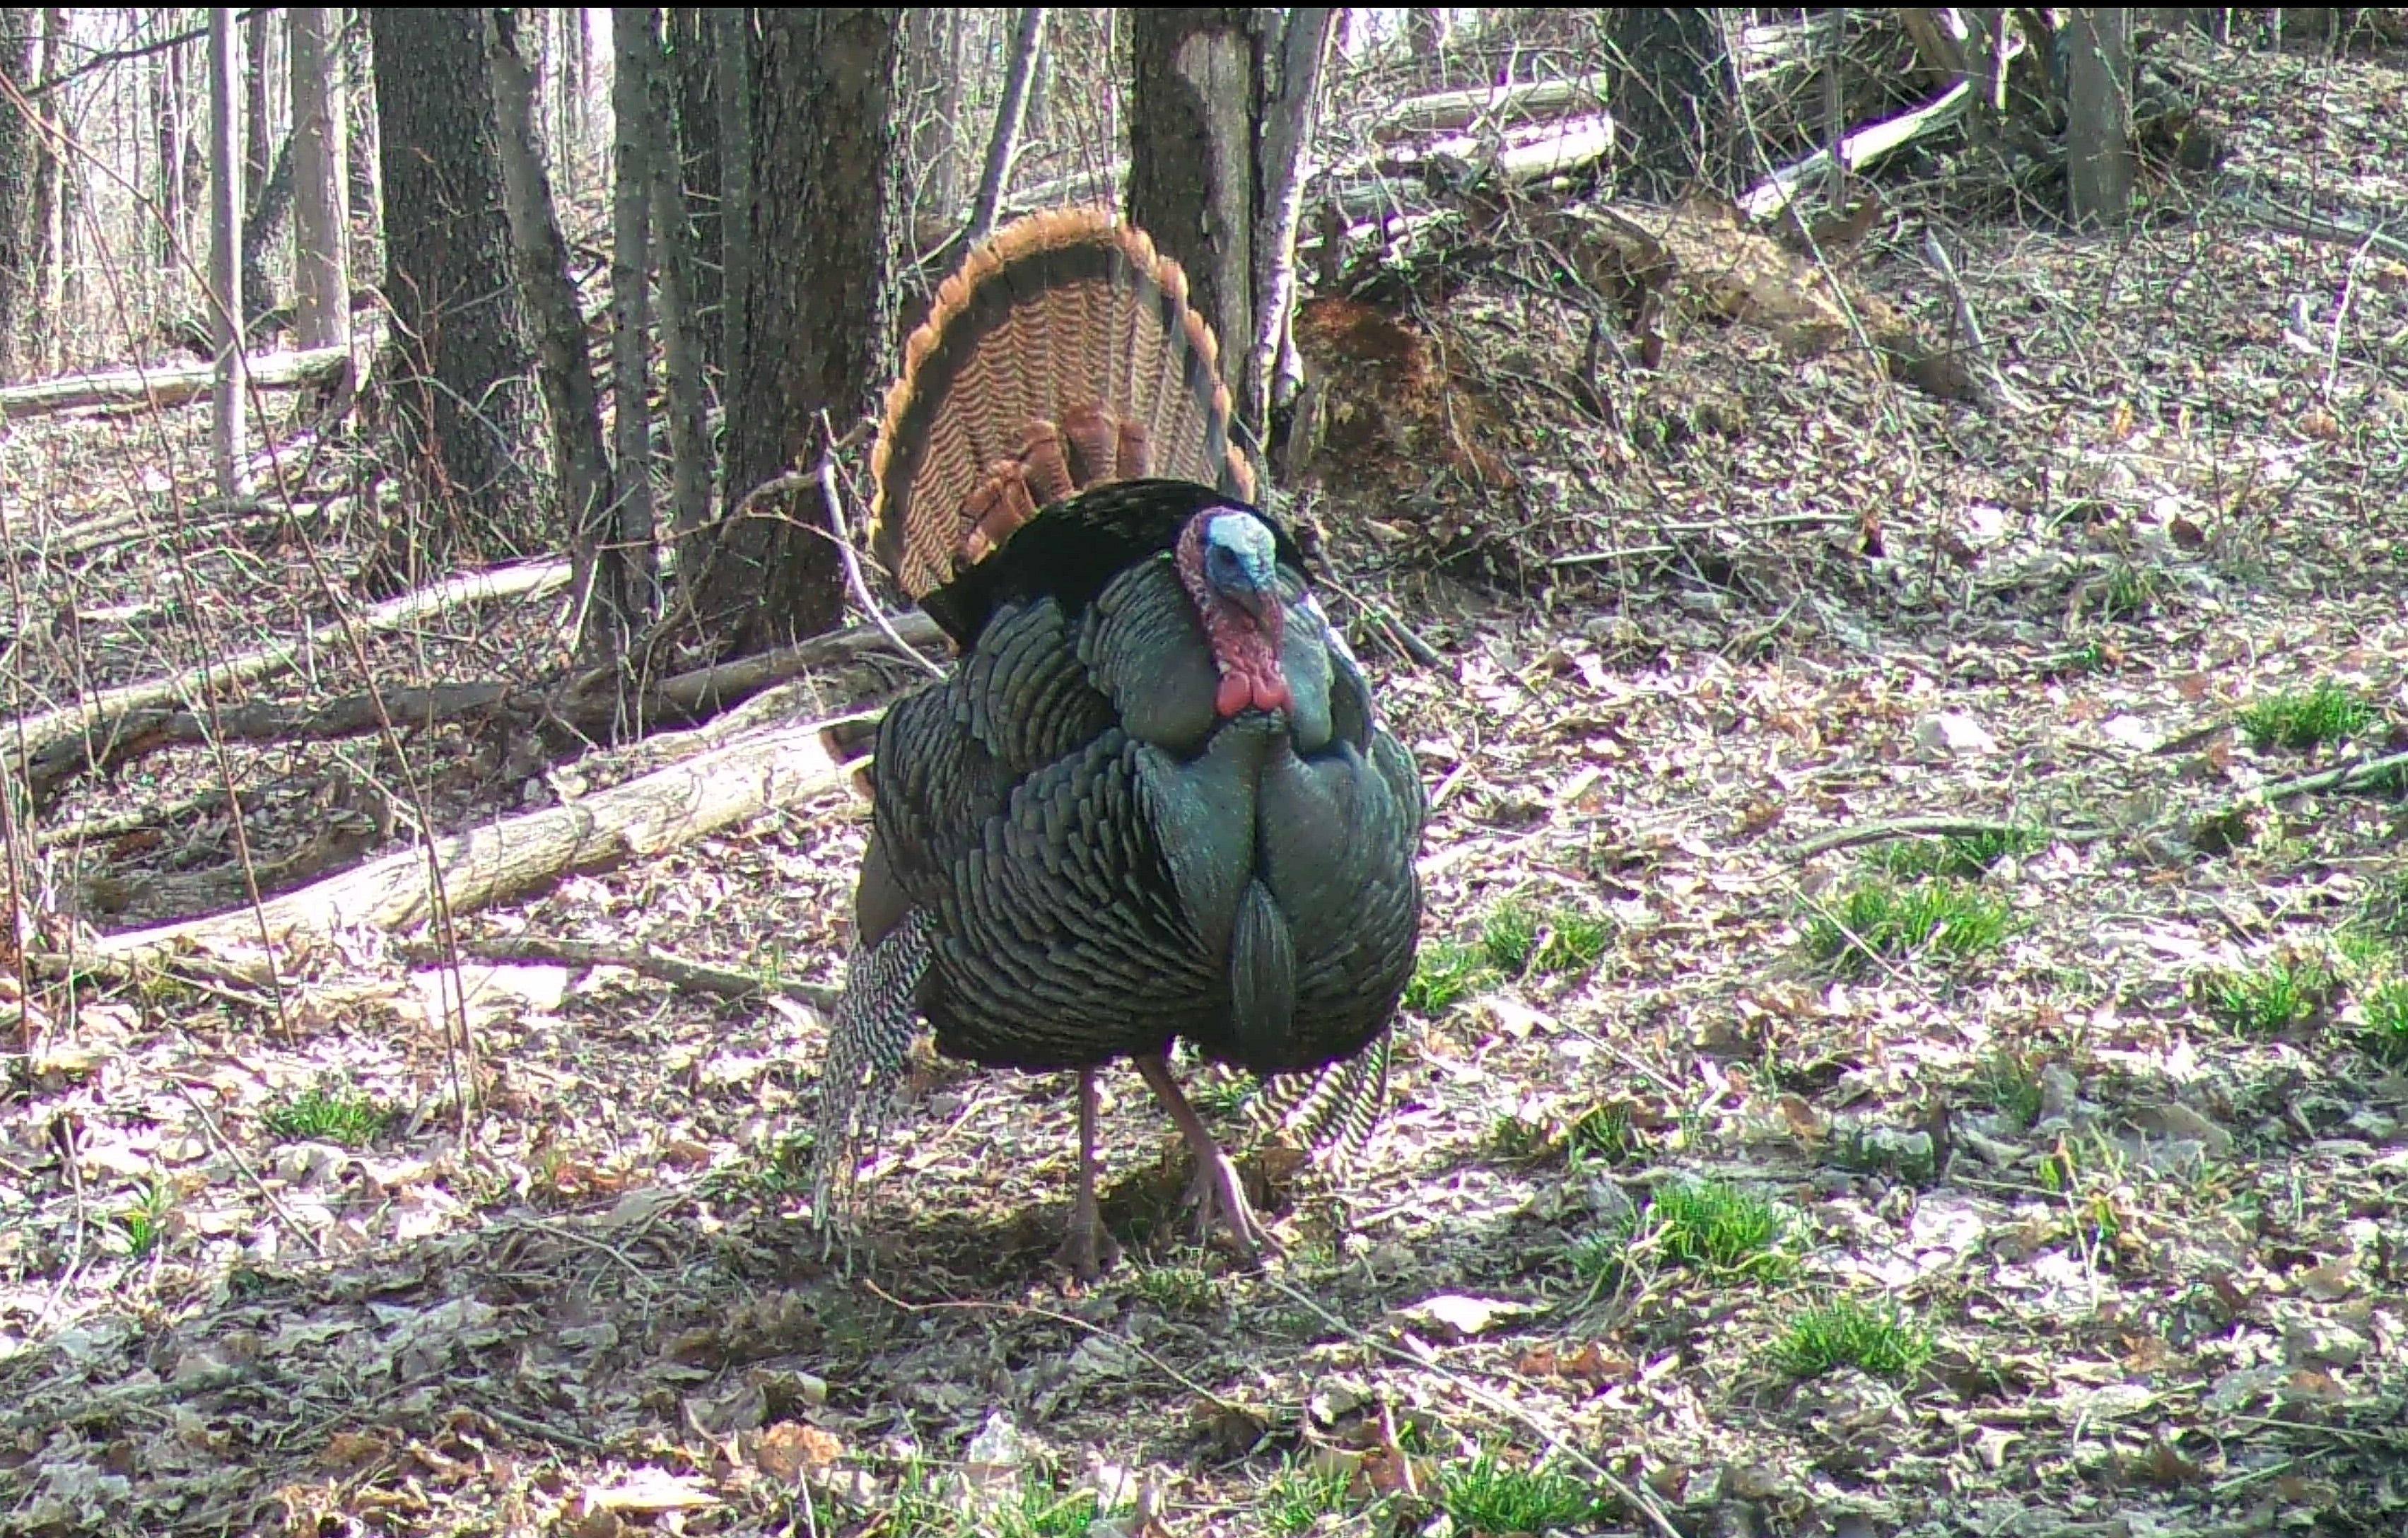 The fall turkey season opens Oct. 28 in many parts of Pennsylvania.